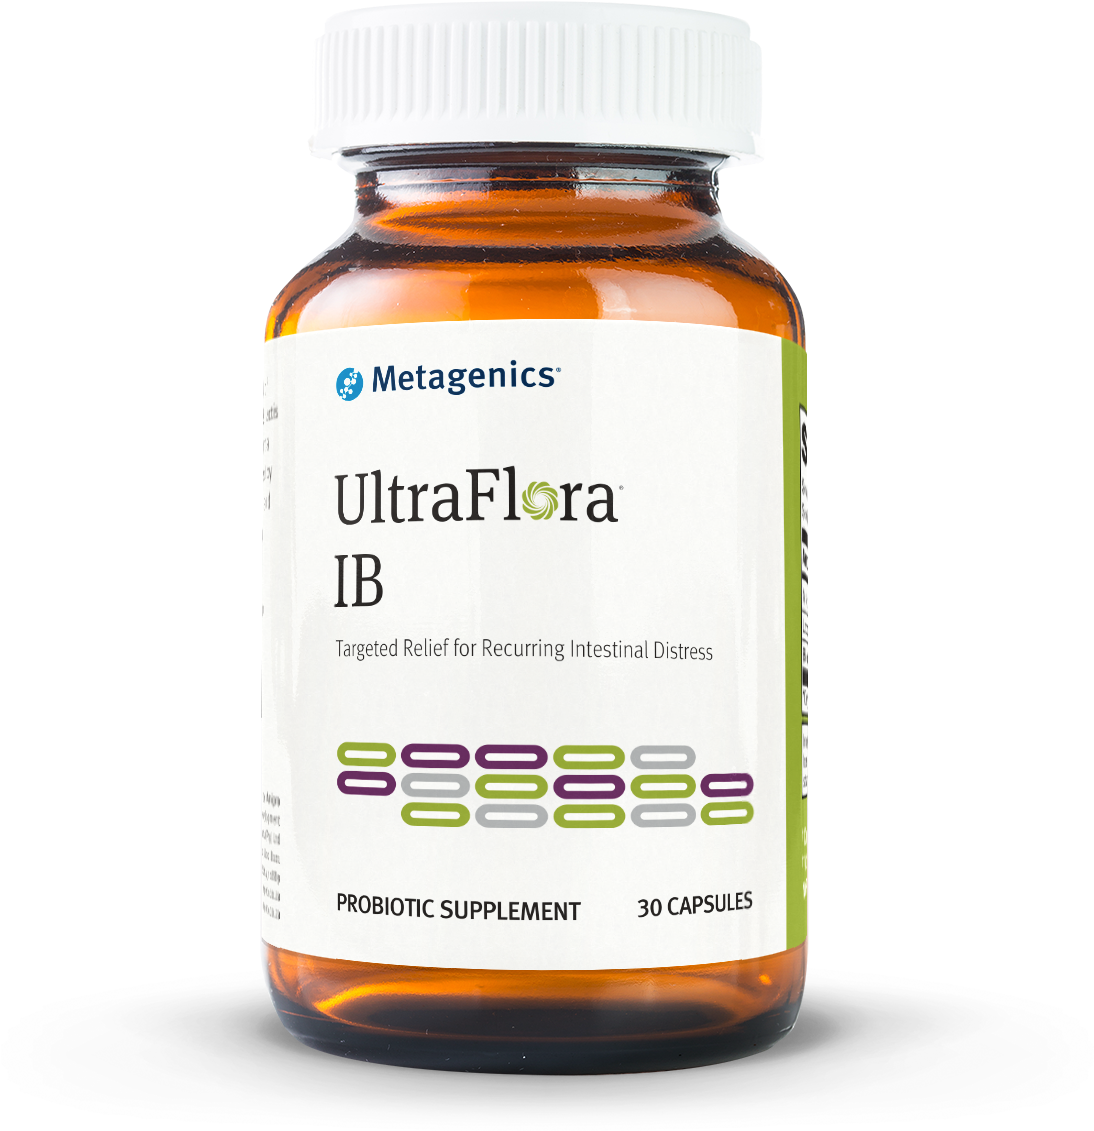 Ultra Flora Ib - Metagenics - Ultraflora Immune Booster - 30 Capsules (1181x1181), Png Download